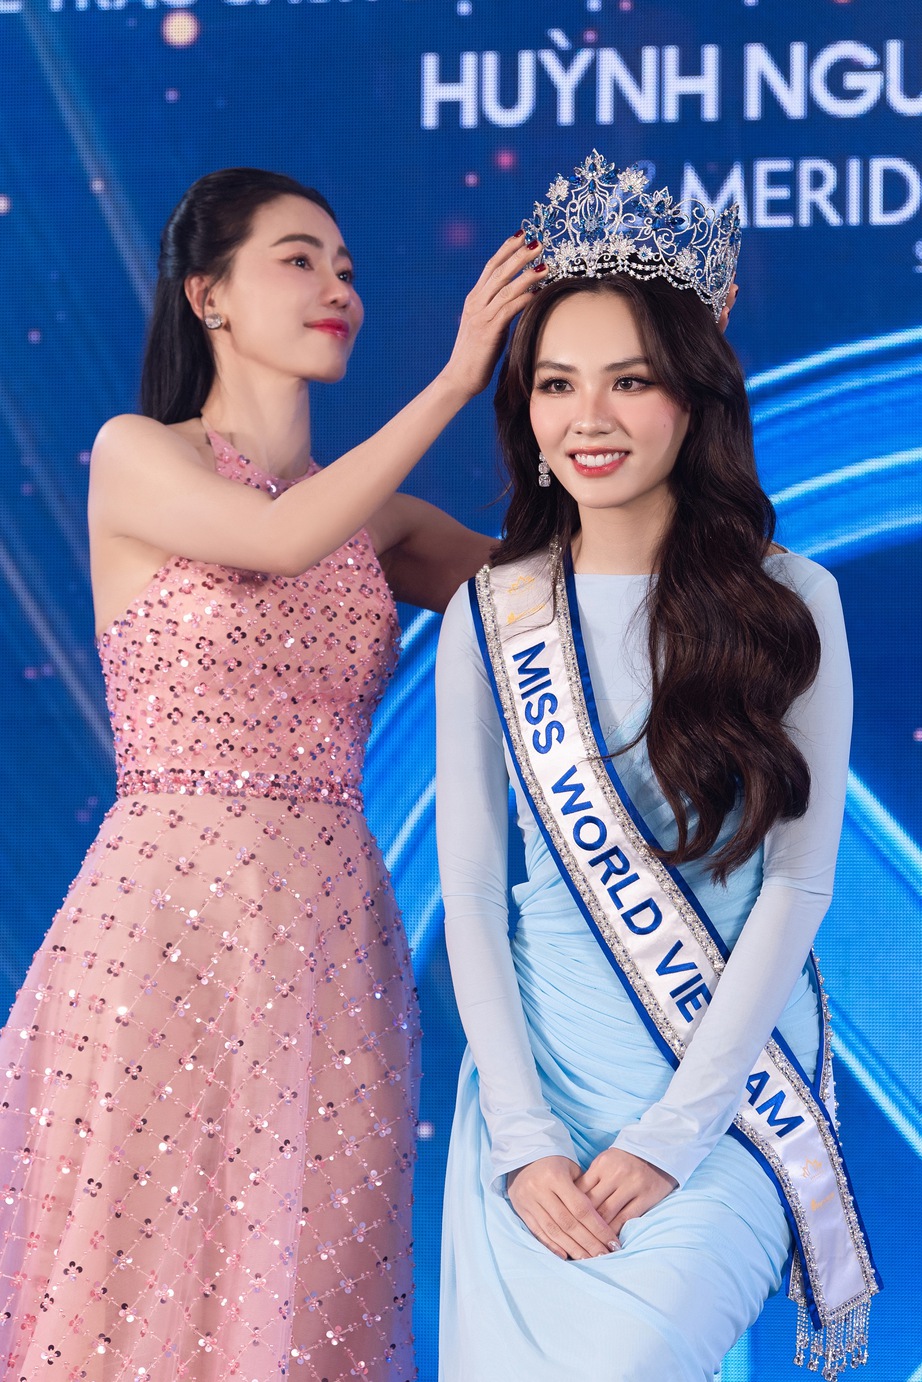 Hoa hậu Mai Phương chính thức nhận sash Miss World Vietnam, chinh chiến tại Miss World 71- Ảnh 1.